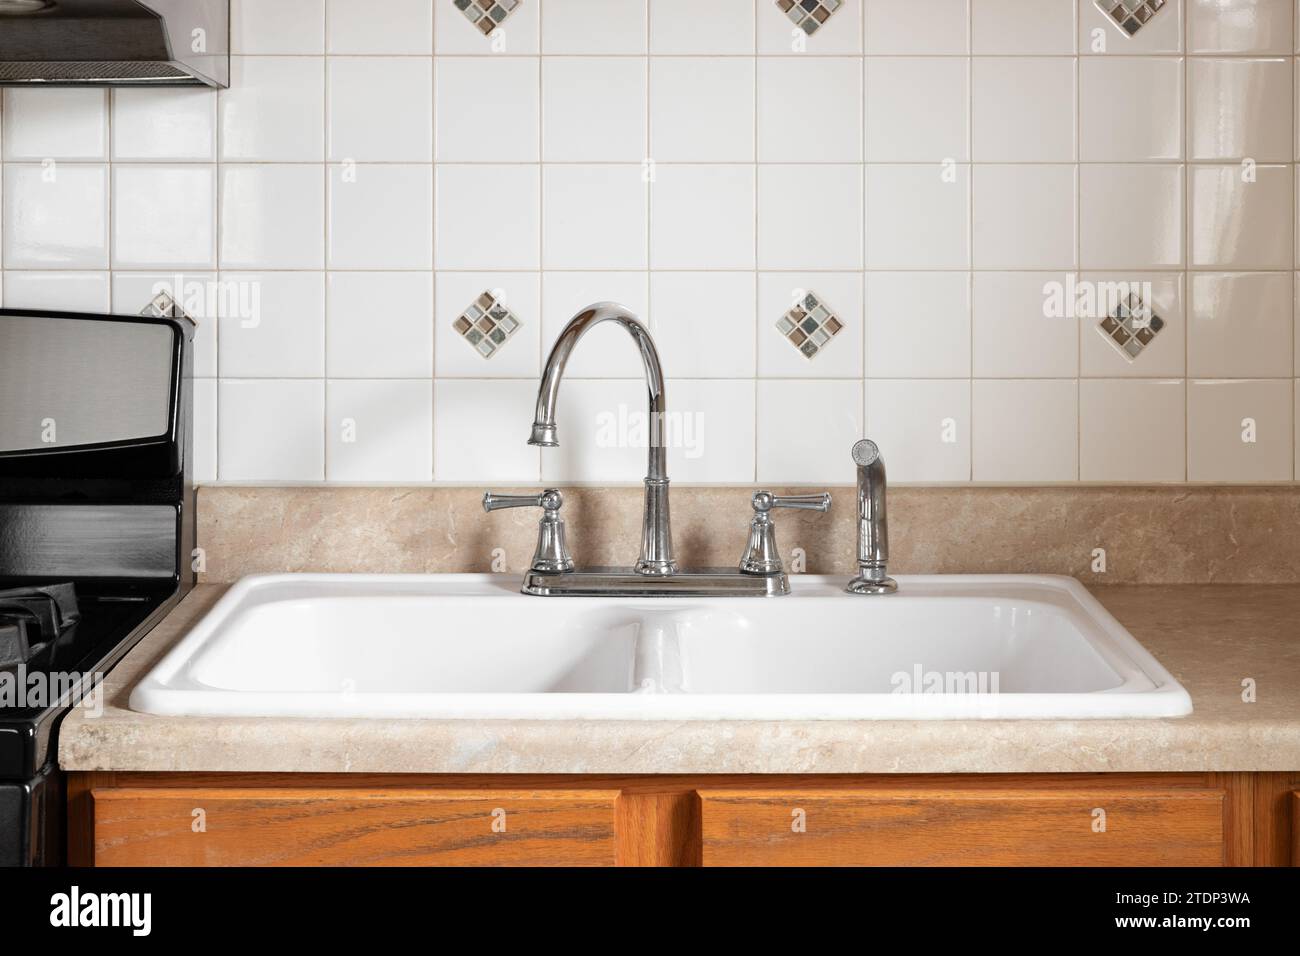 Un vieux détail de robinet de cuisine avec armoires en bois, évier blanc, robinet chromé, et un dosseret de carrelage carré. Banque D'Images